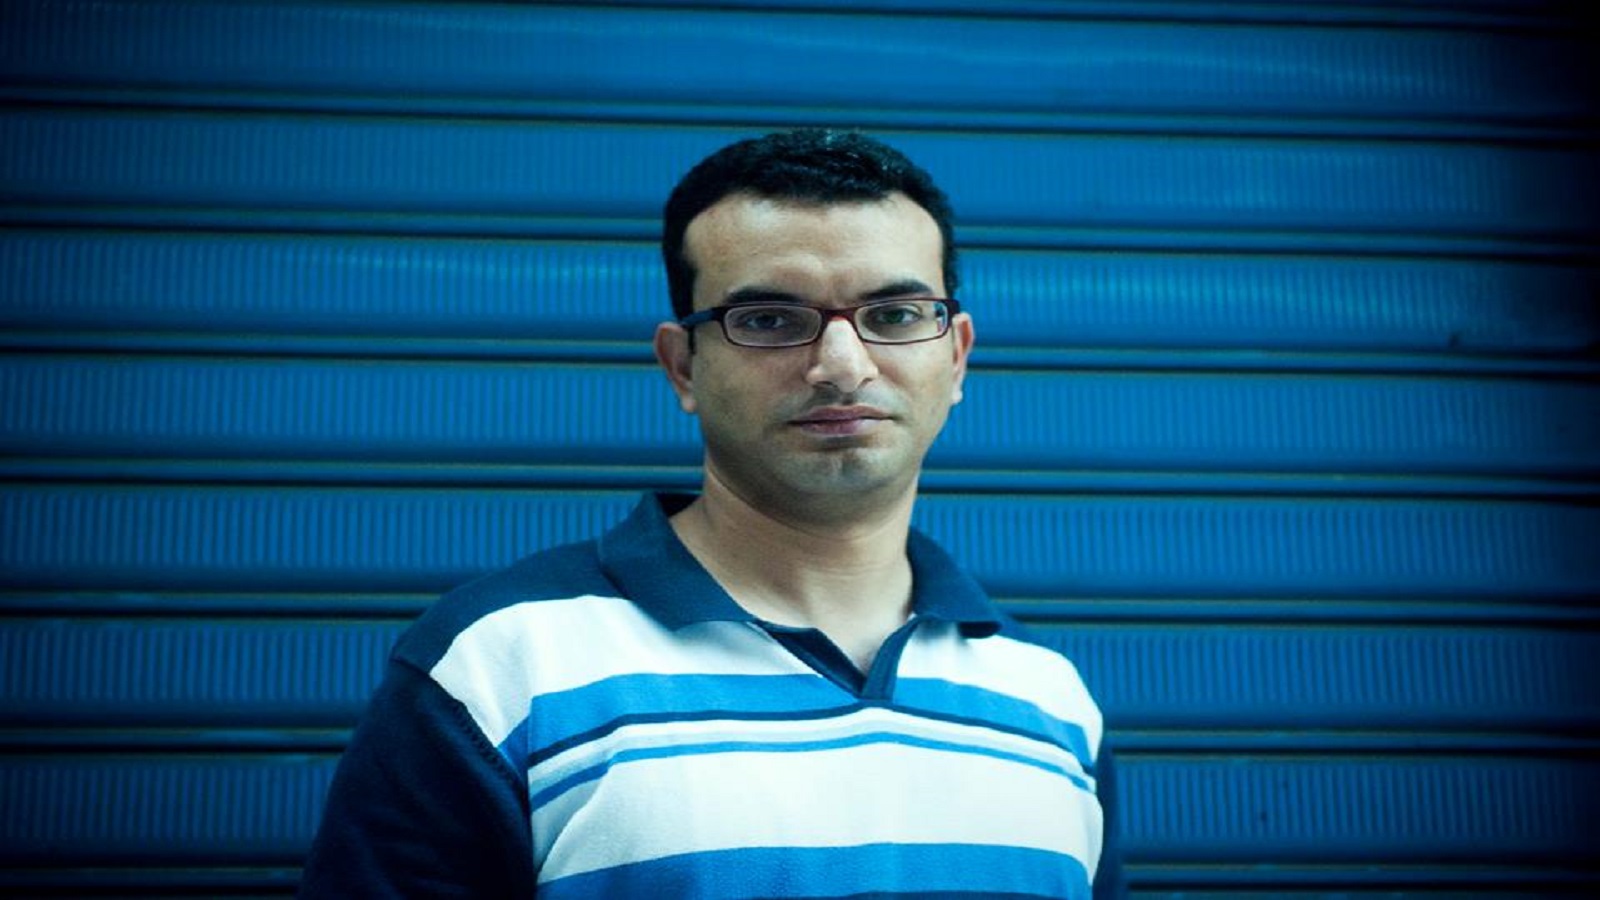 محمد ربيع: "عطارد" هو فشل الثورة وليس الثورة